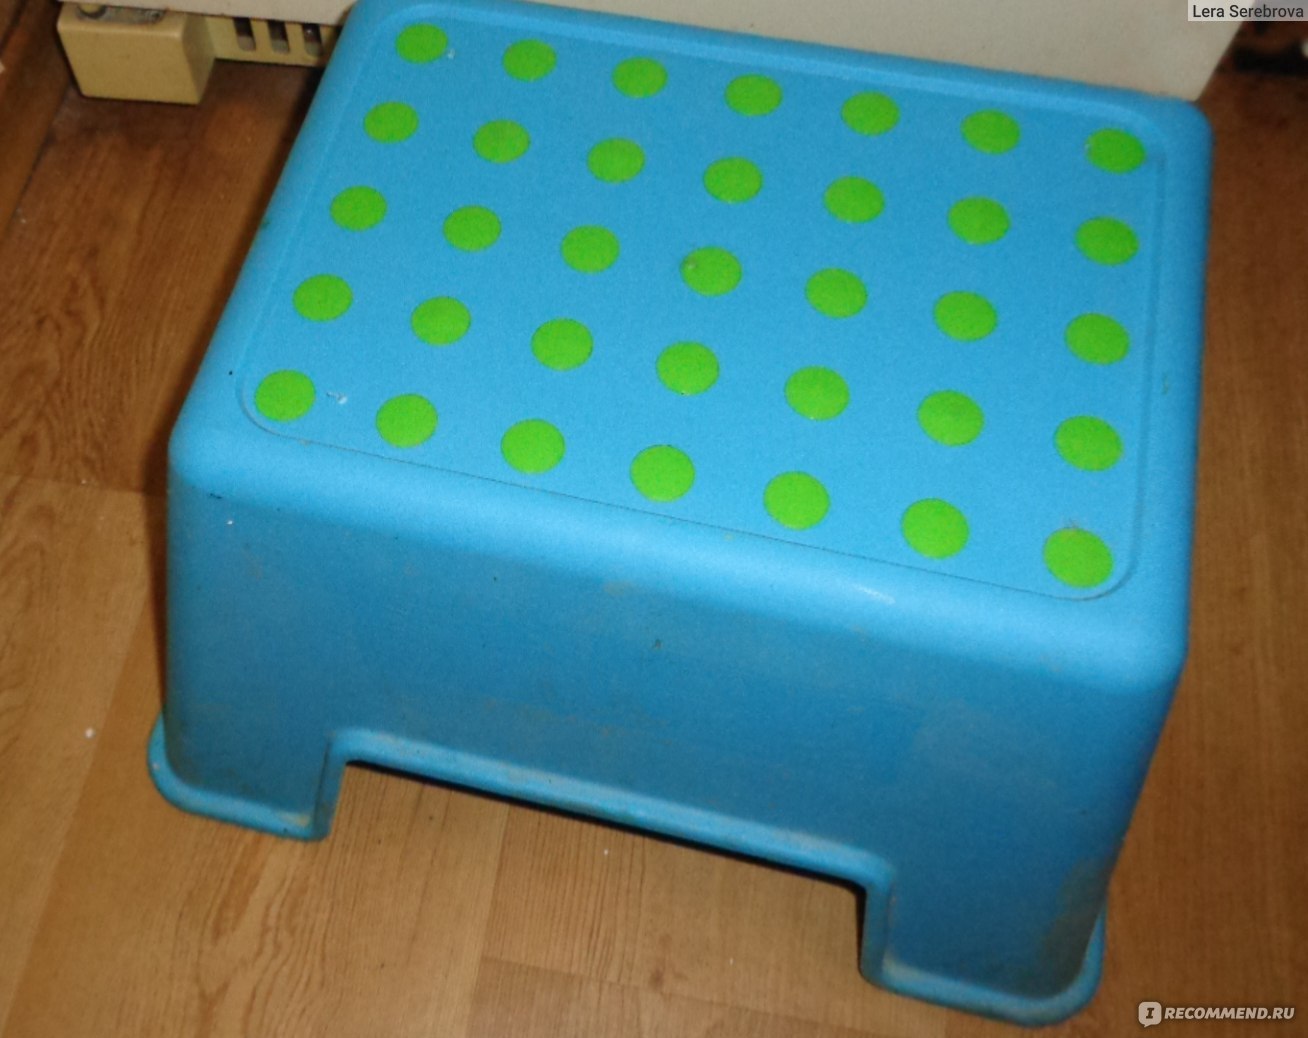 IKEA 80 лет: первая мебель в плоской упаковке